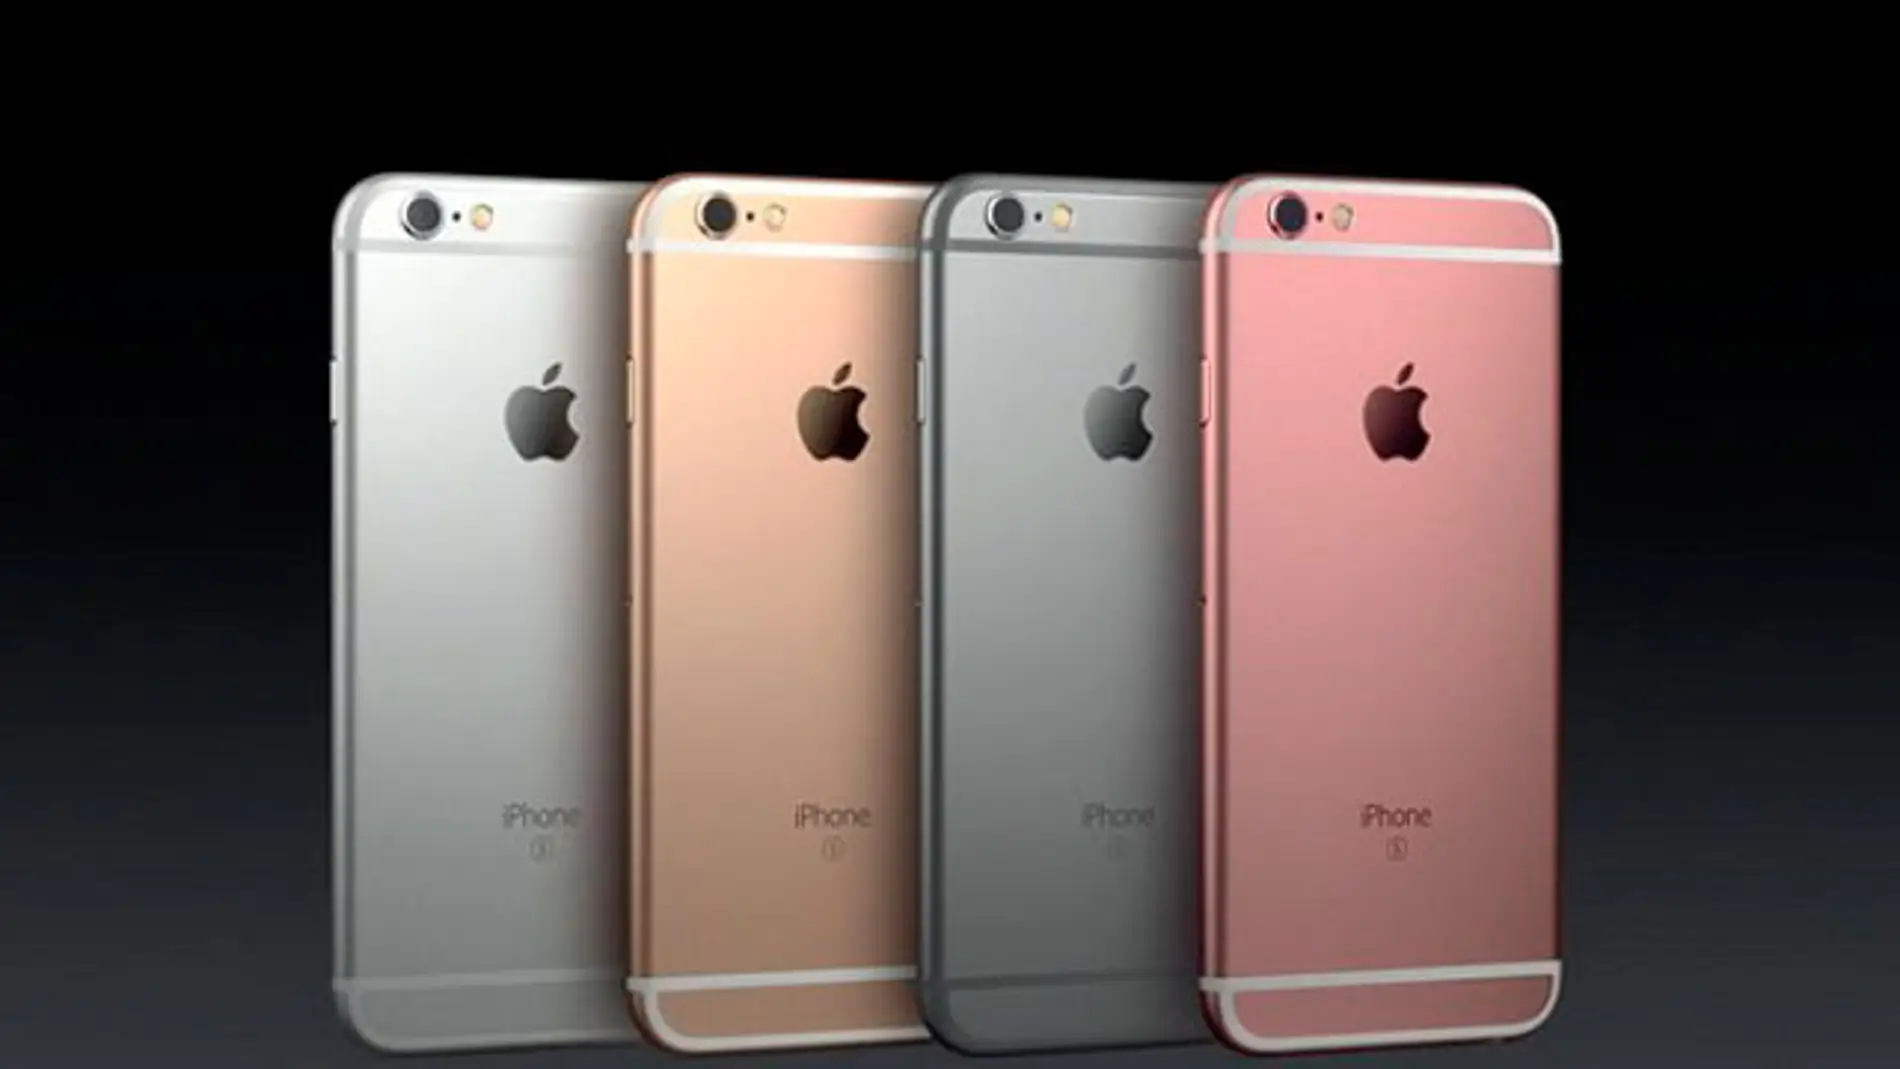 La gama de colores de los iPhone 6s